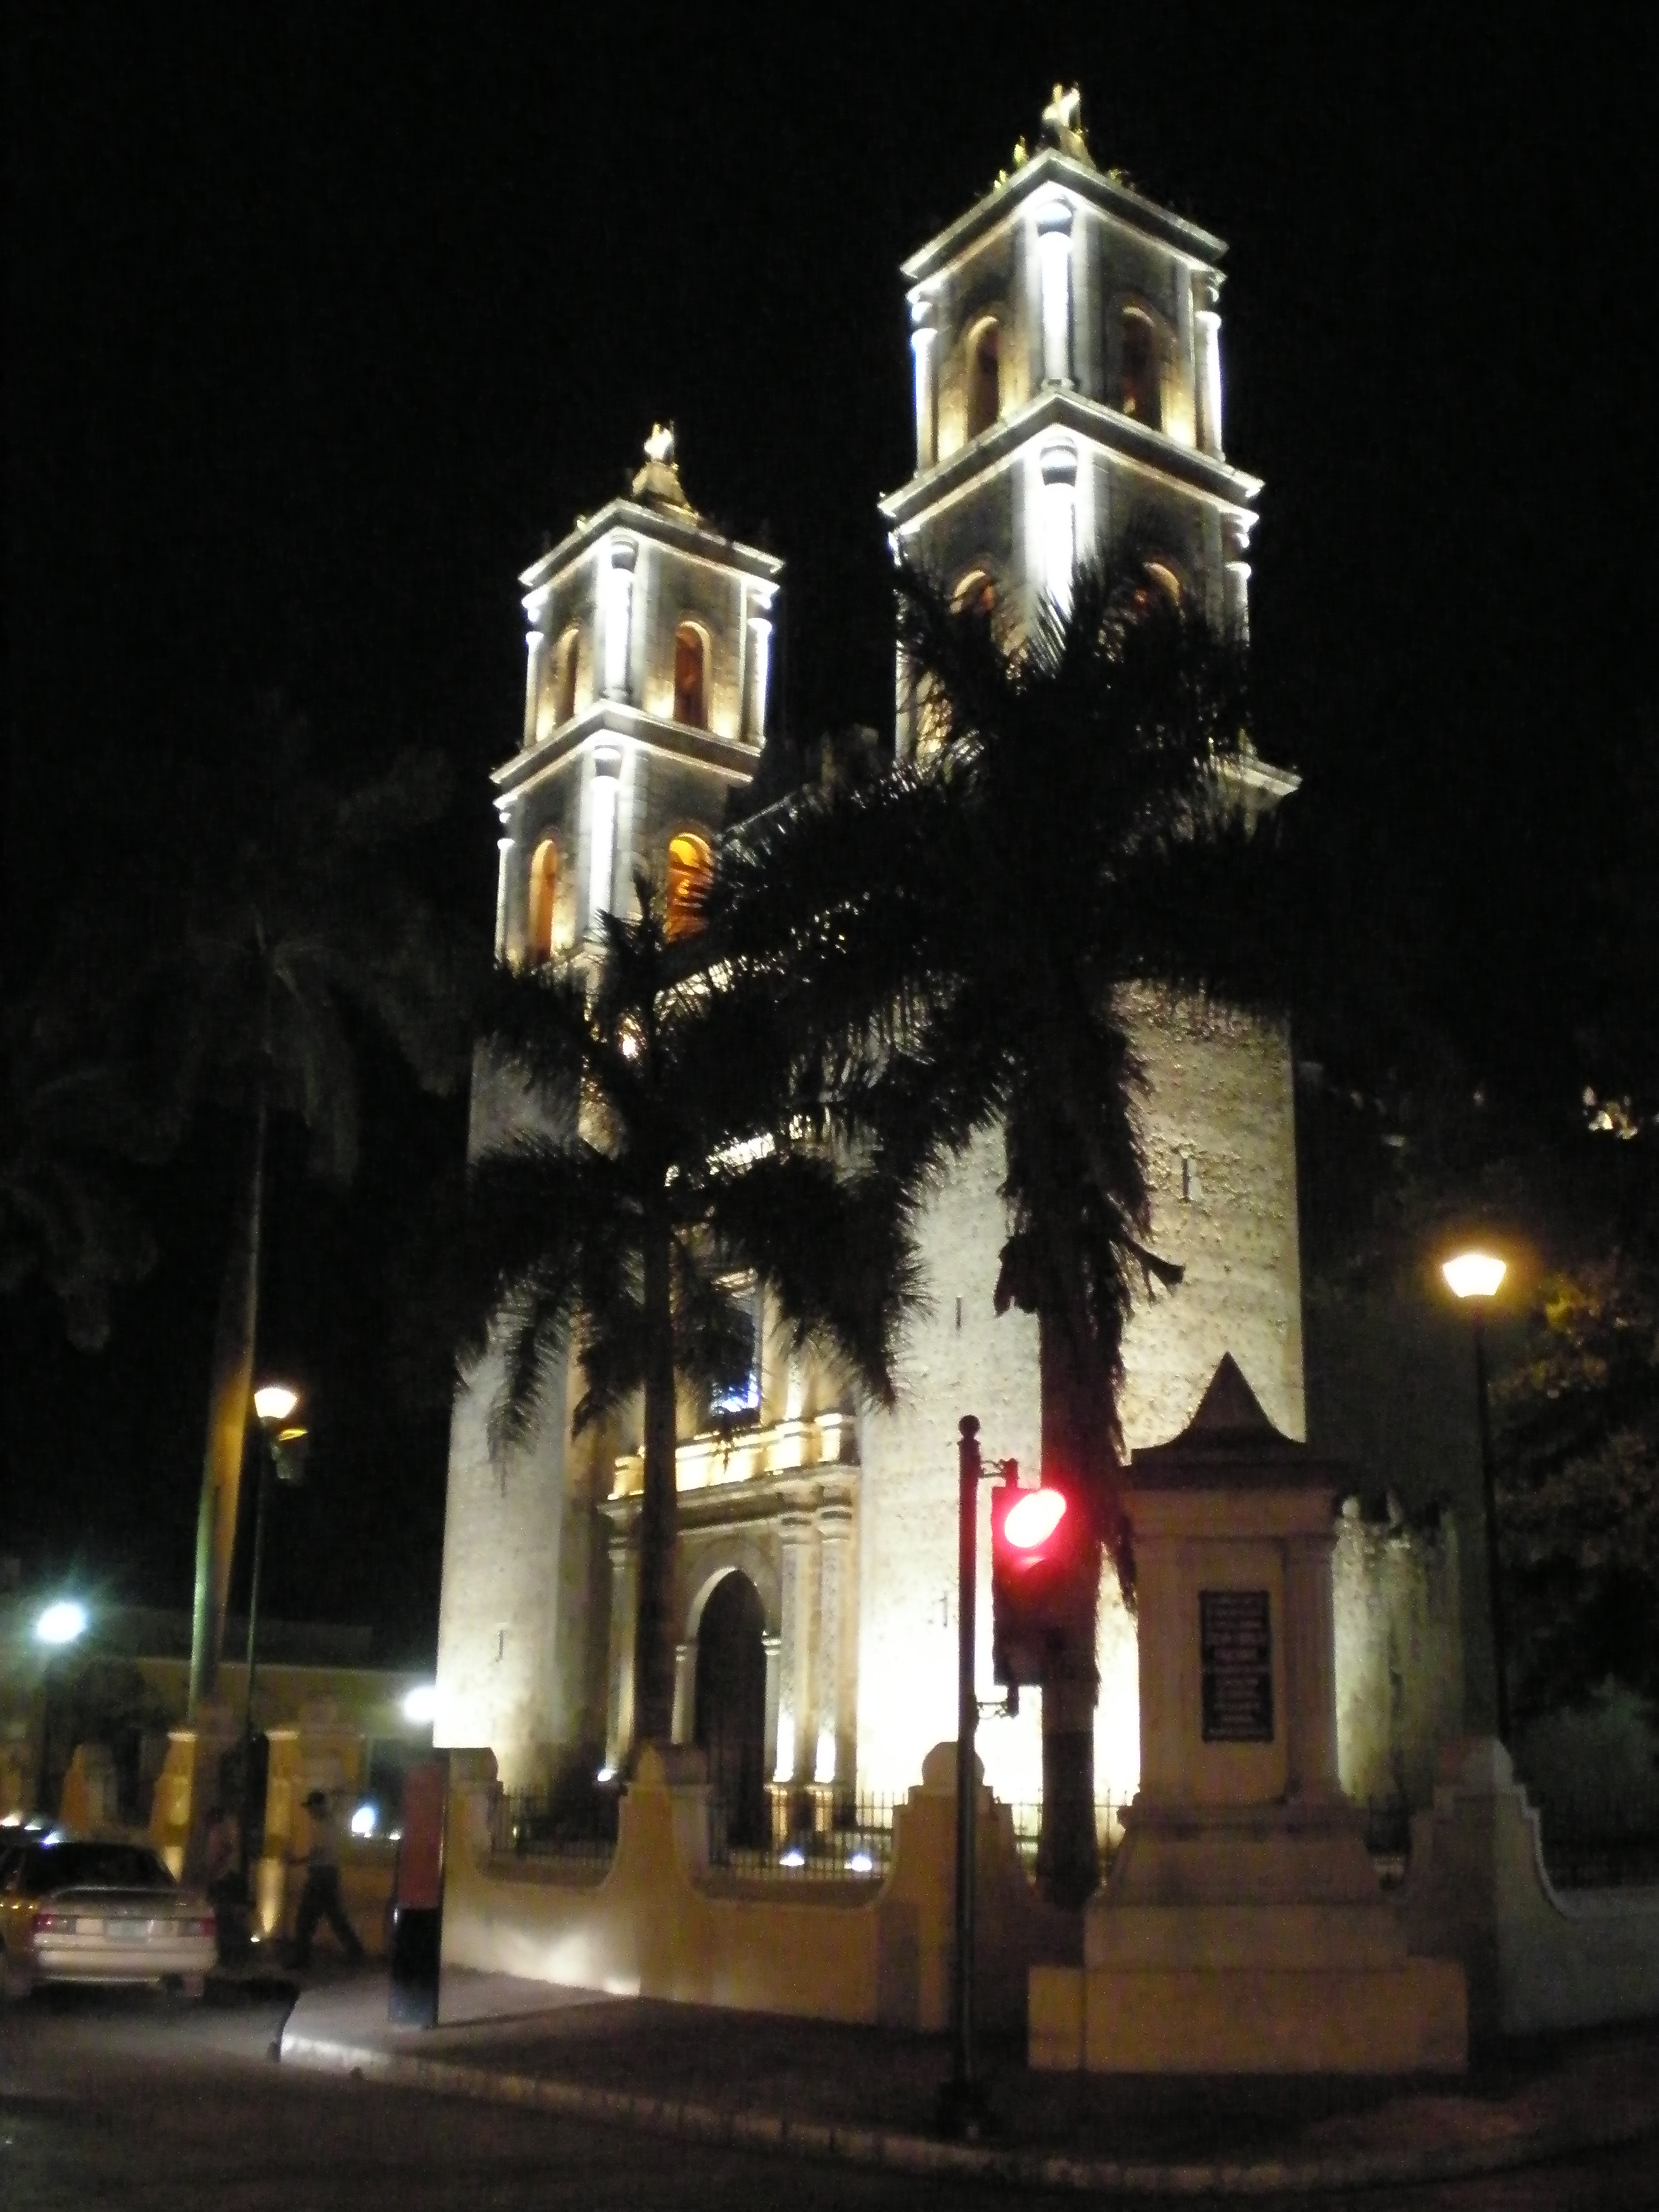 Cathedral of San Servacio, Valladolid